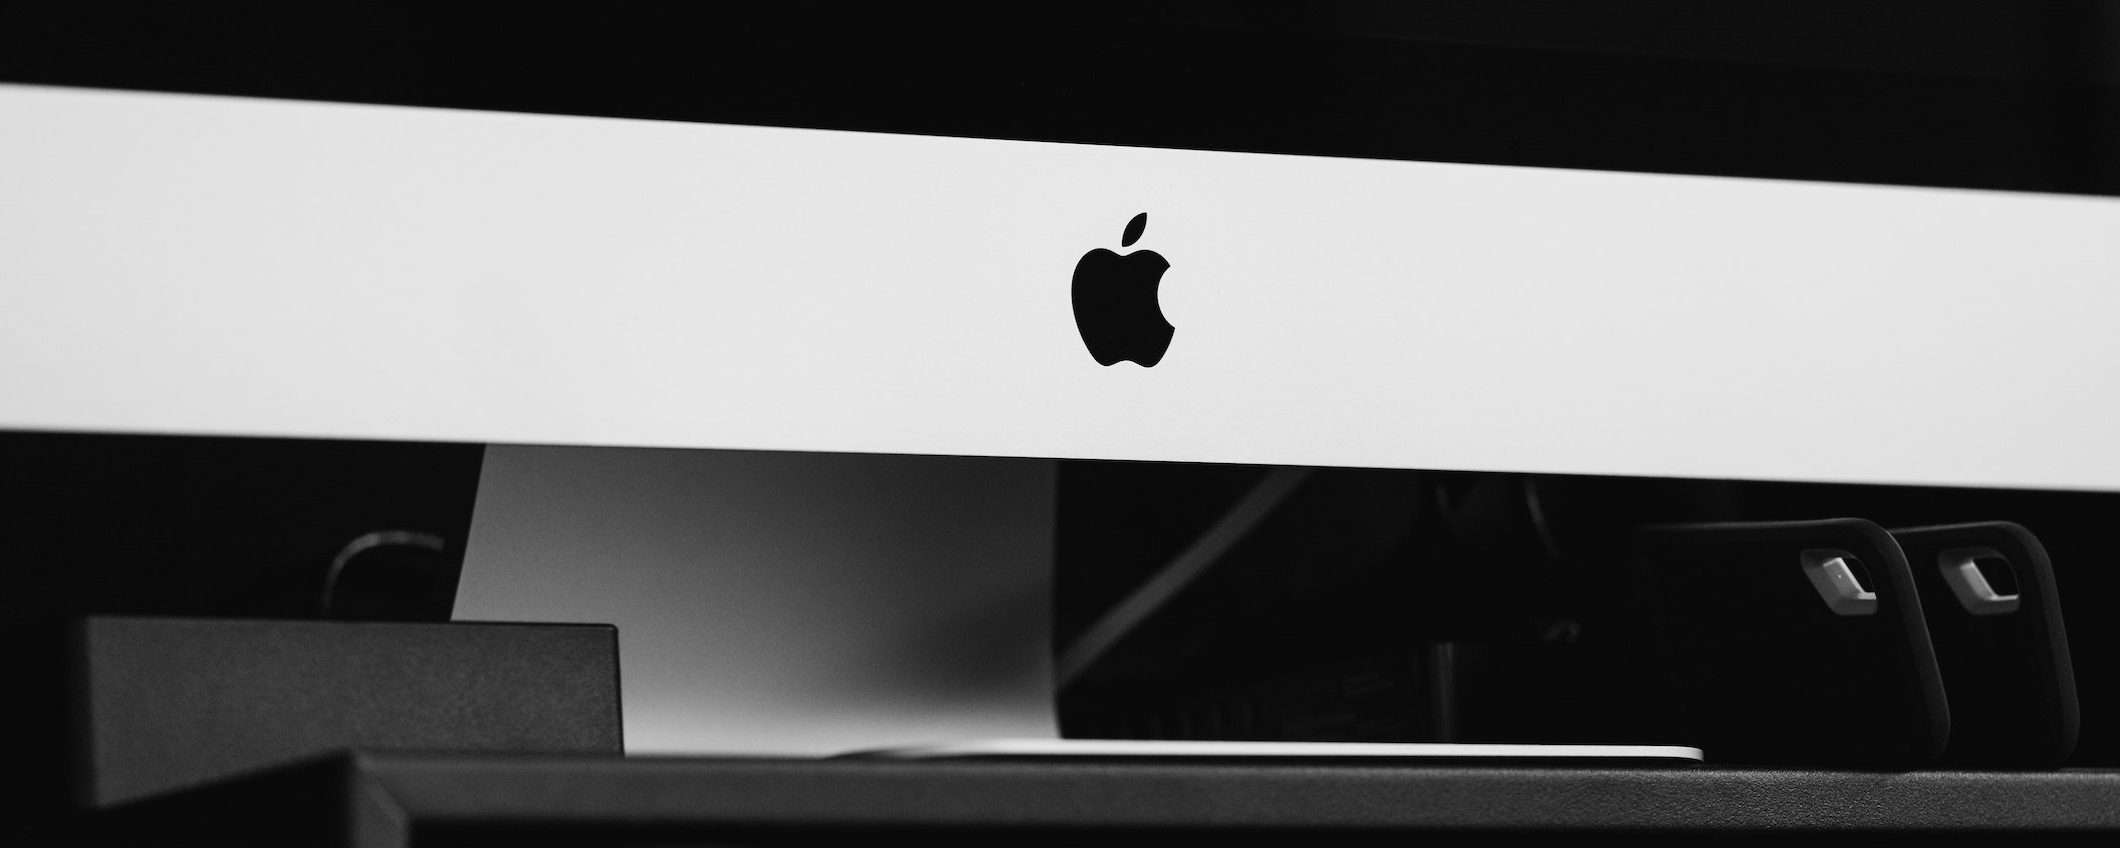 Apple: in arrivo un iMac Pro con CPU a 12 core